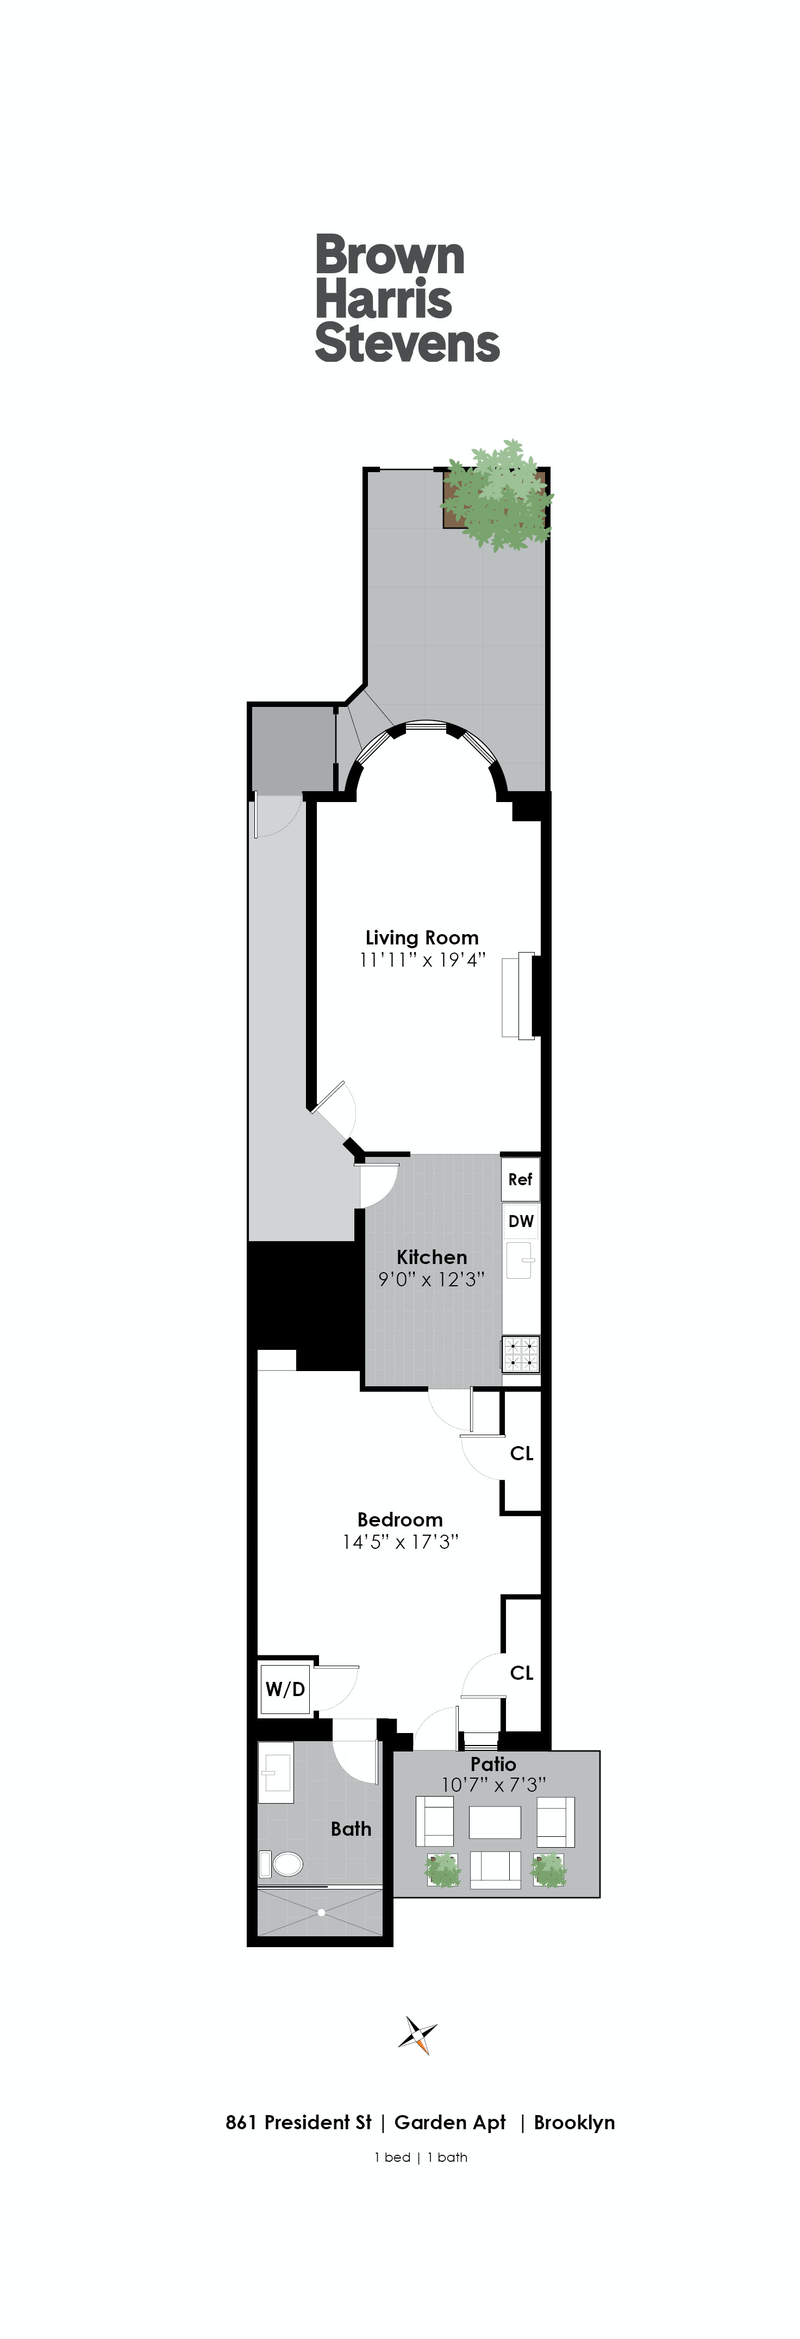 Floorplan for 861 President Street, 1